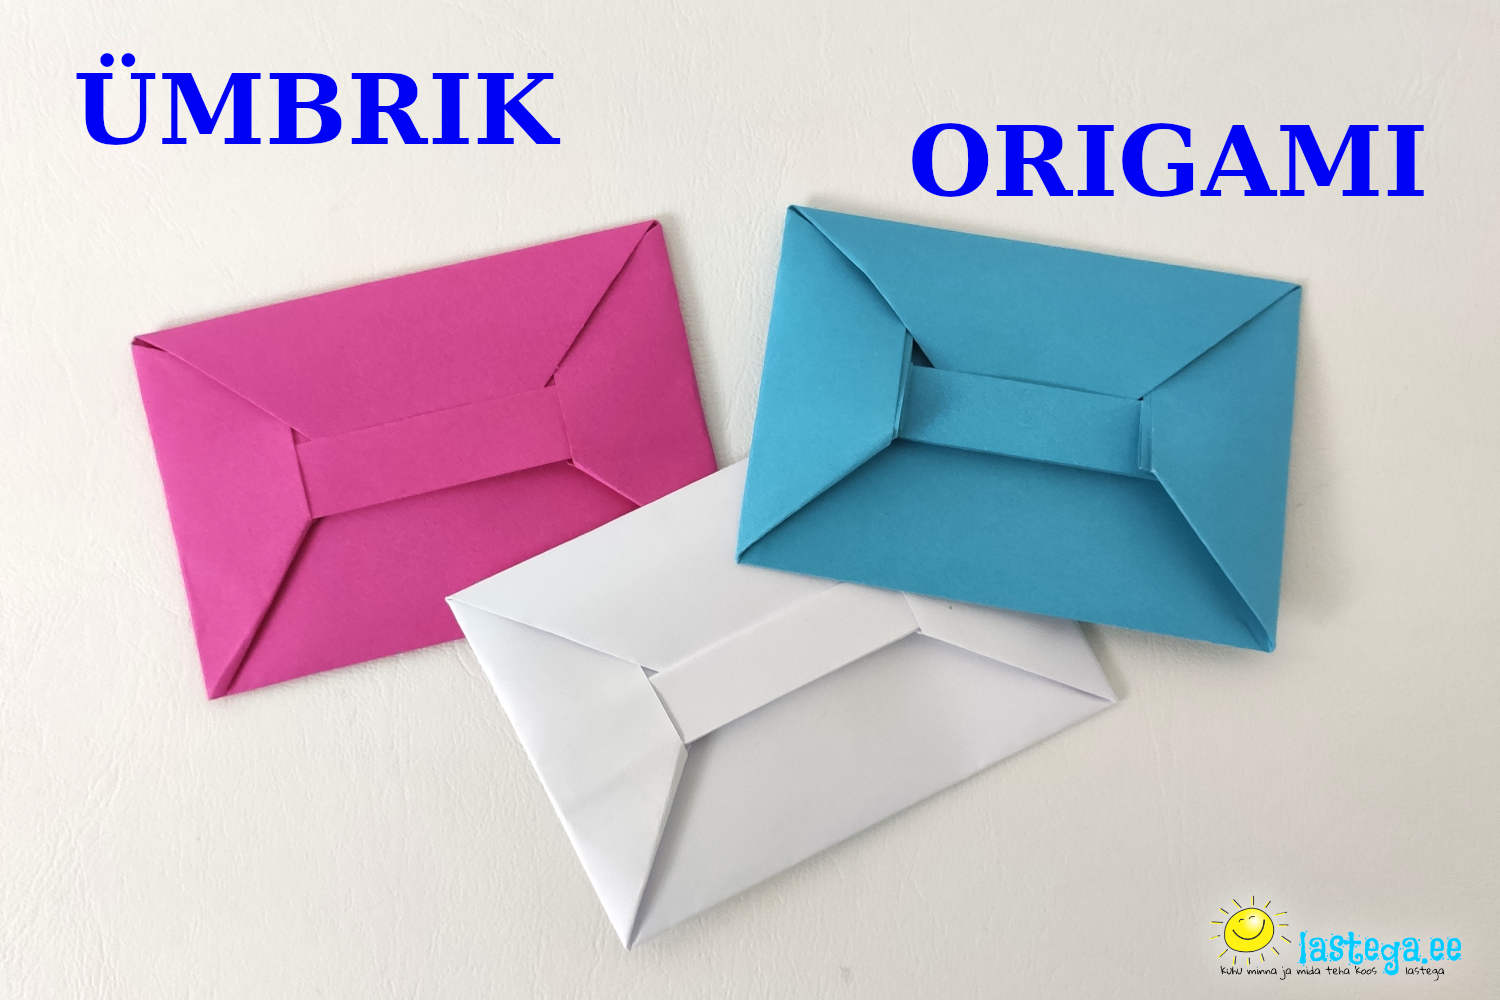 Origami tehnikas ümbrik valmib kiirelt. @Lastega.ee